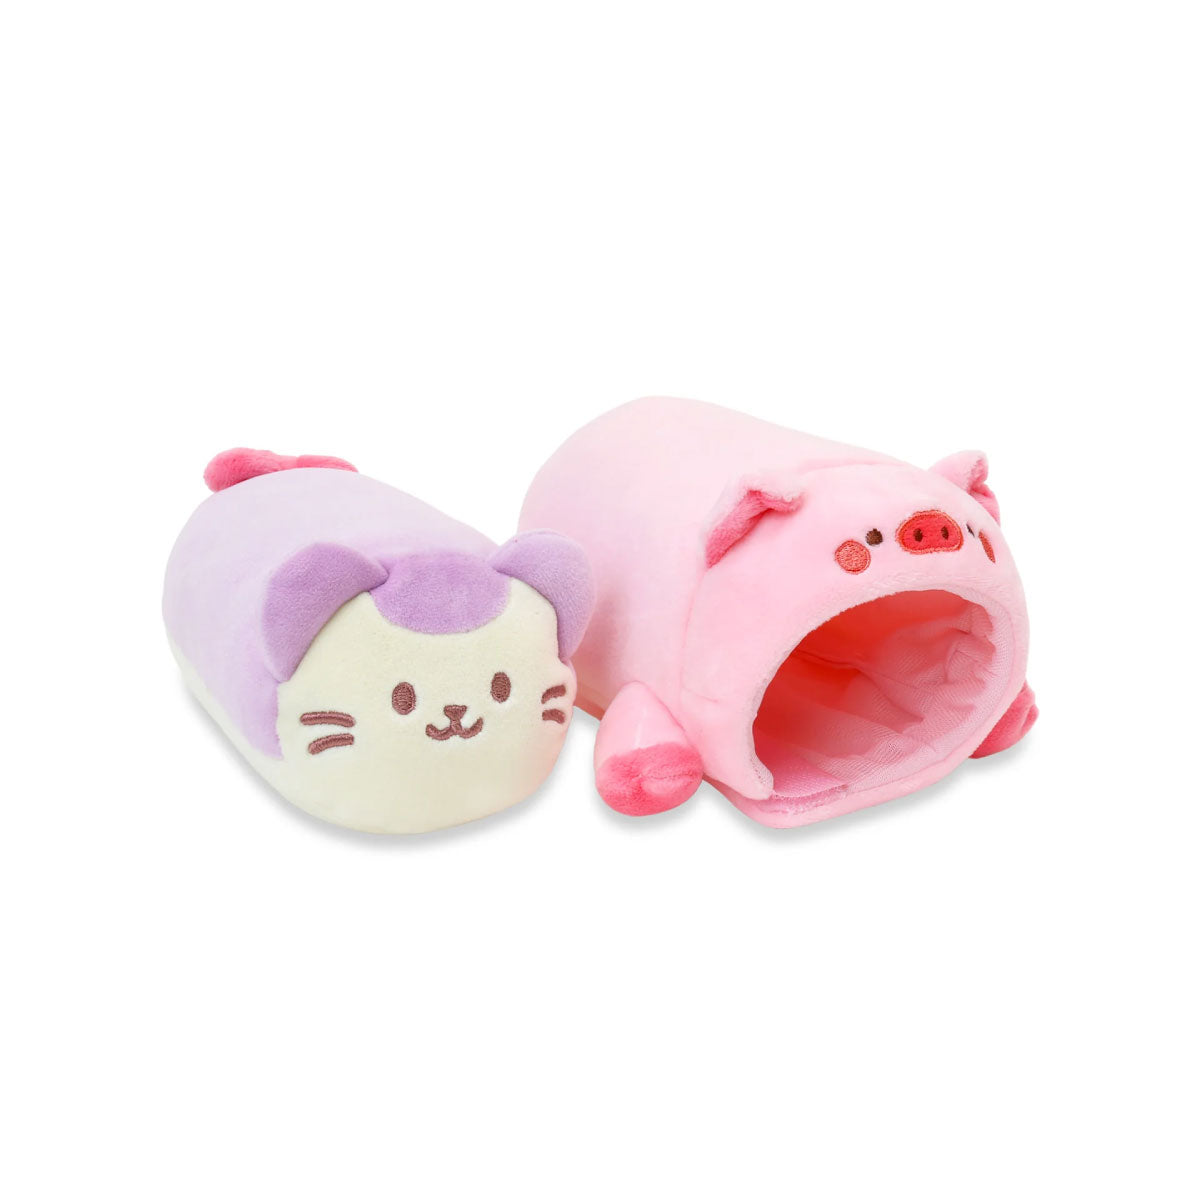 Anirollz in Animals 6” Small Blanket Plush Pig Lavender Kittiroll